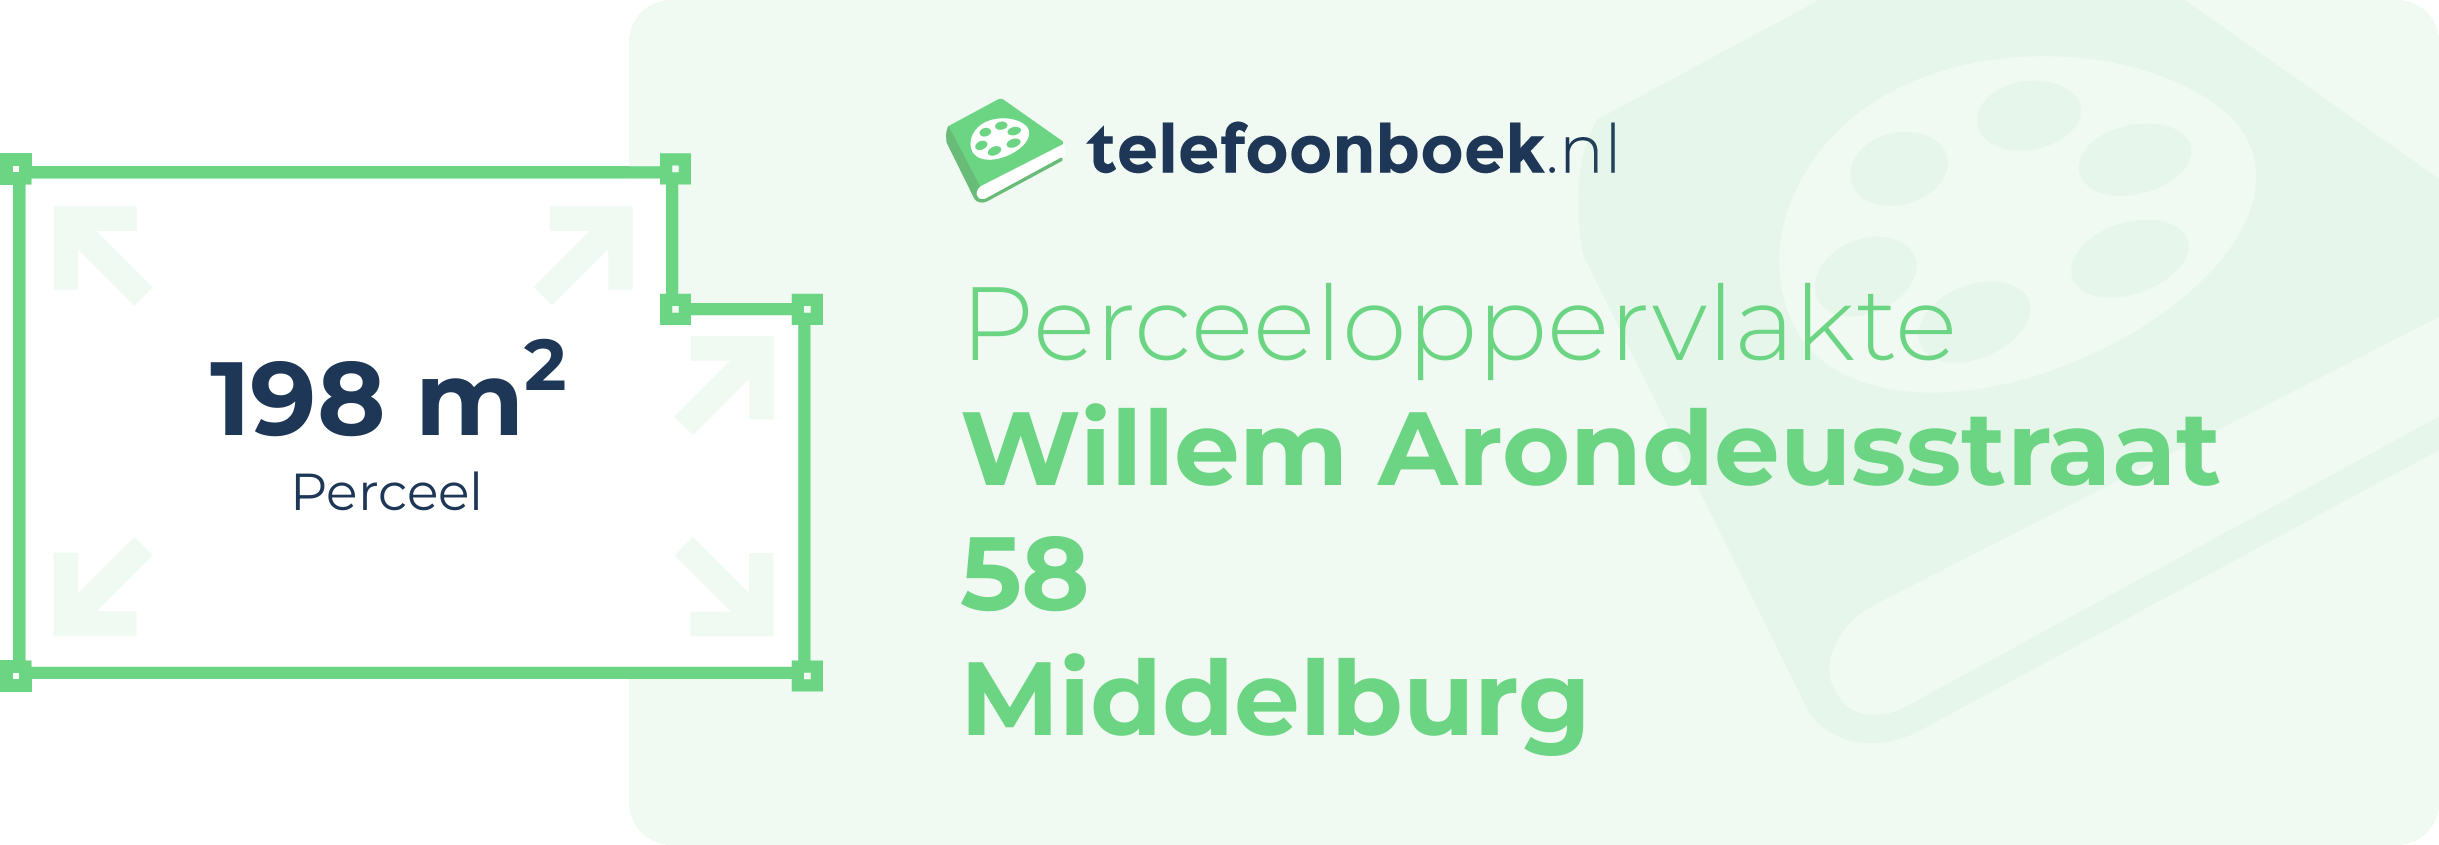 Perceeloppervlakte Willem Arondeusstraat 58 Middelburg